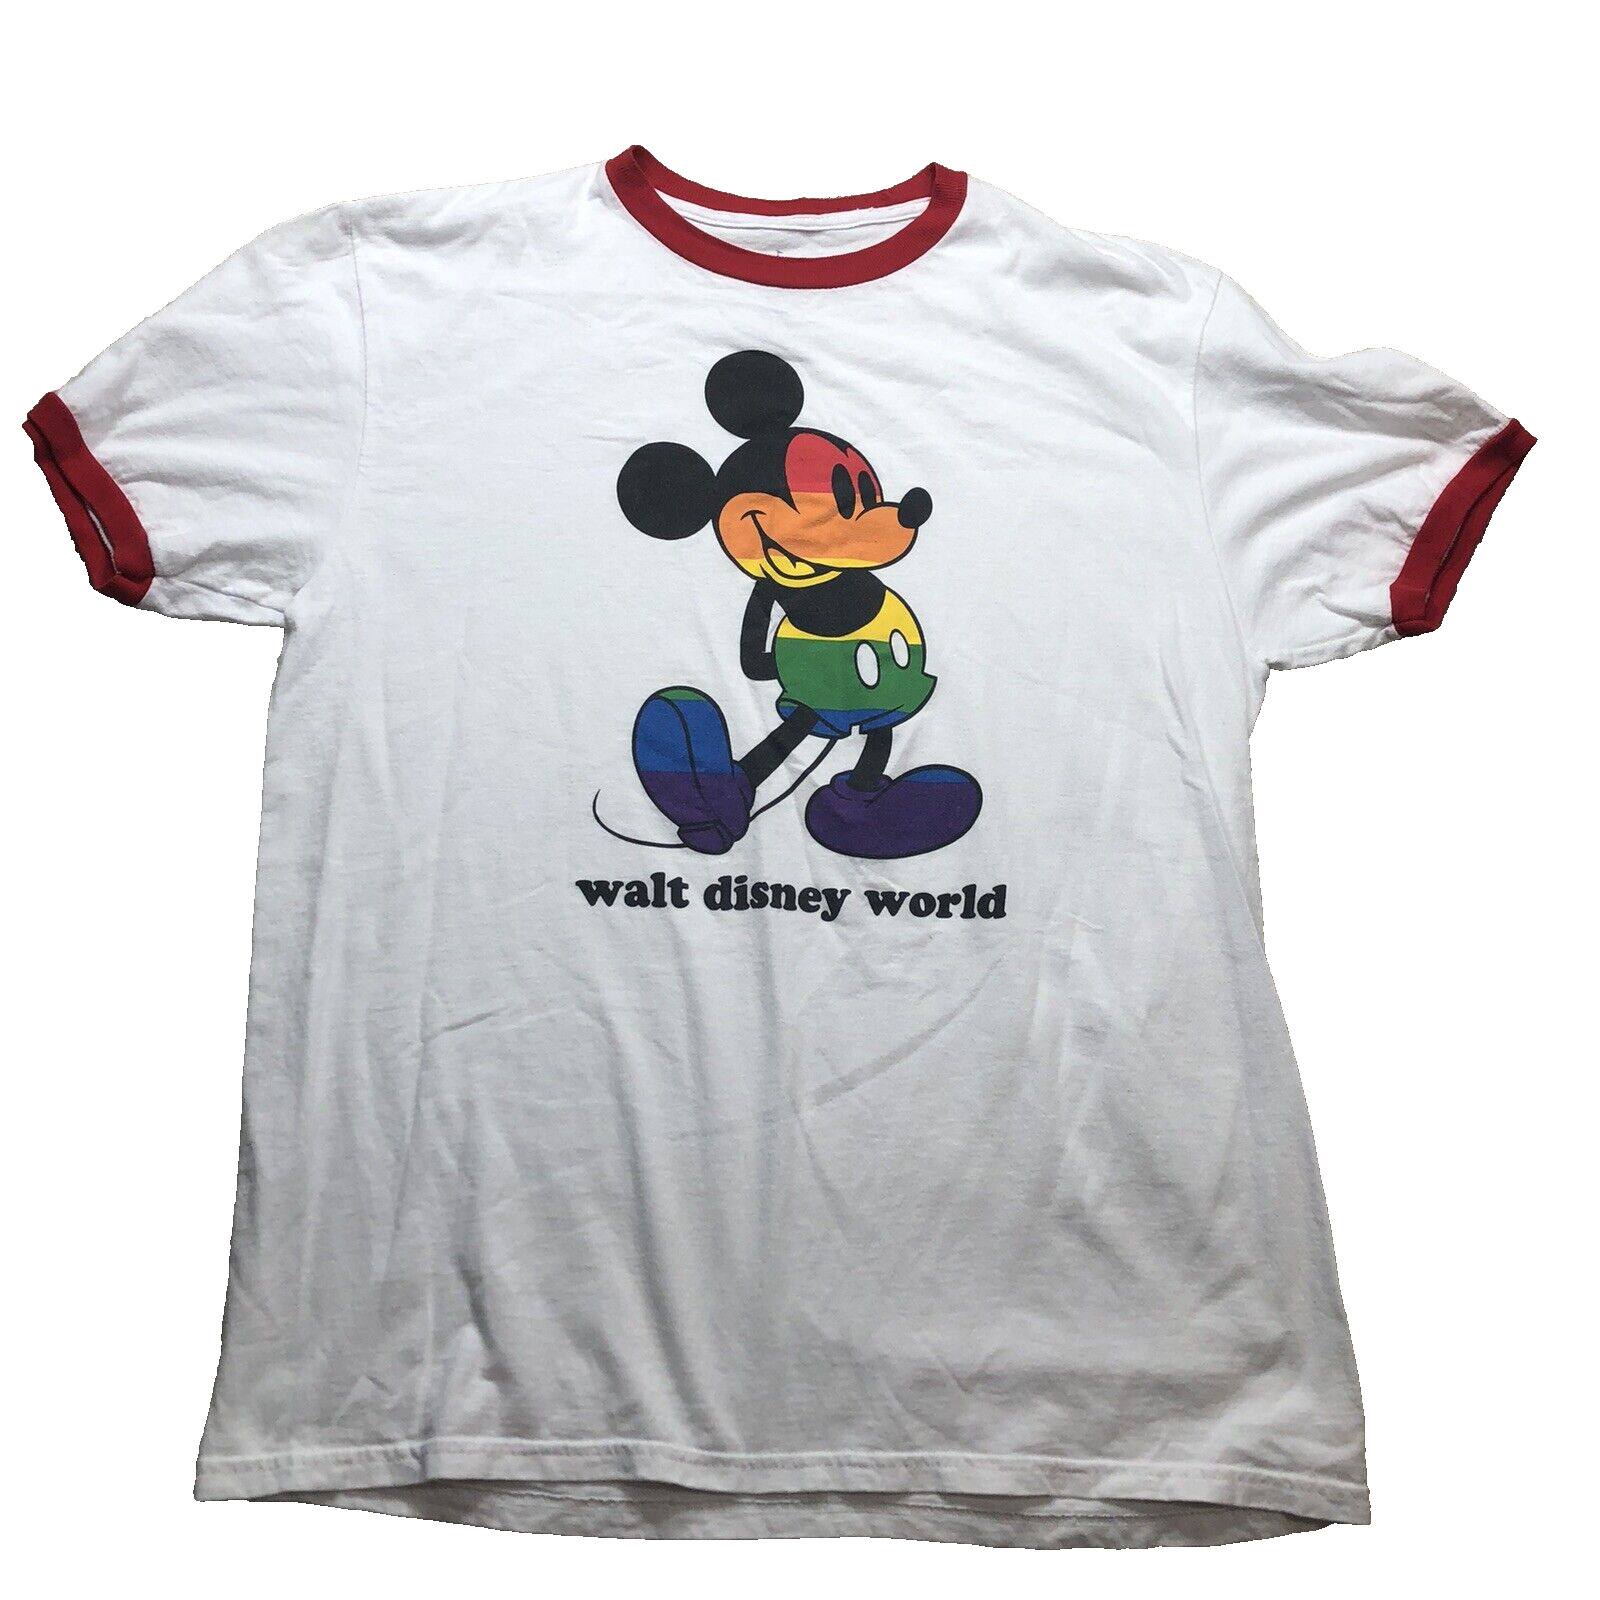 Disney Rainbow Mickey Shirt Unisex Large ringer Tee short sleeve white